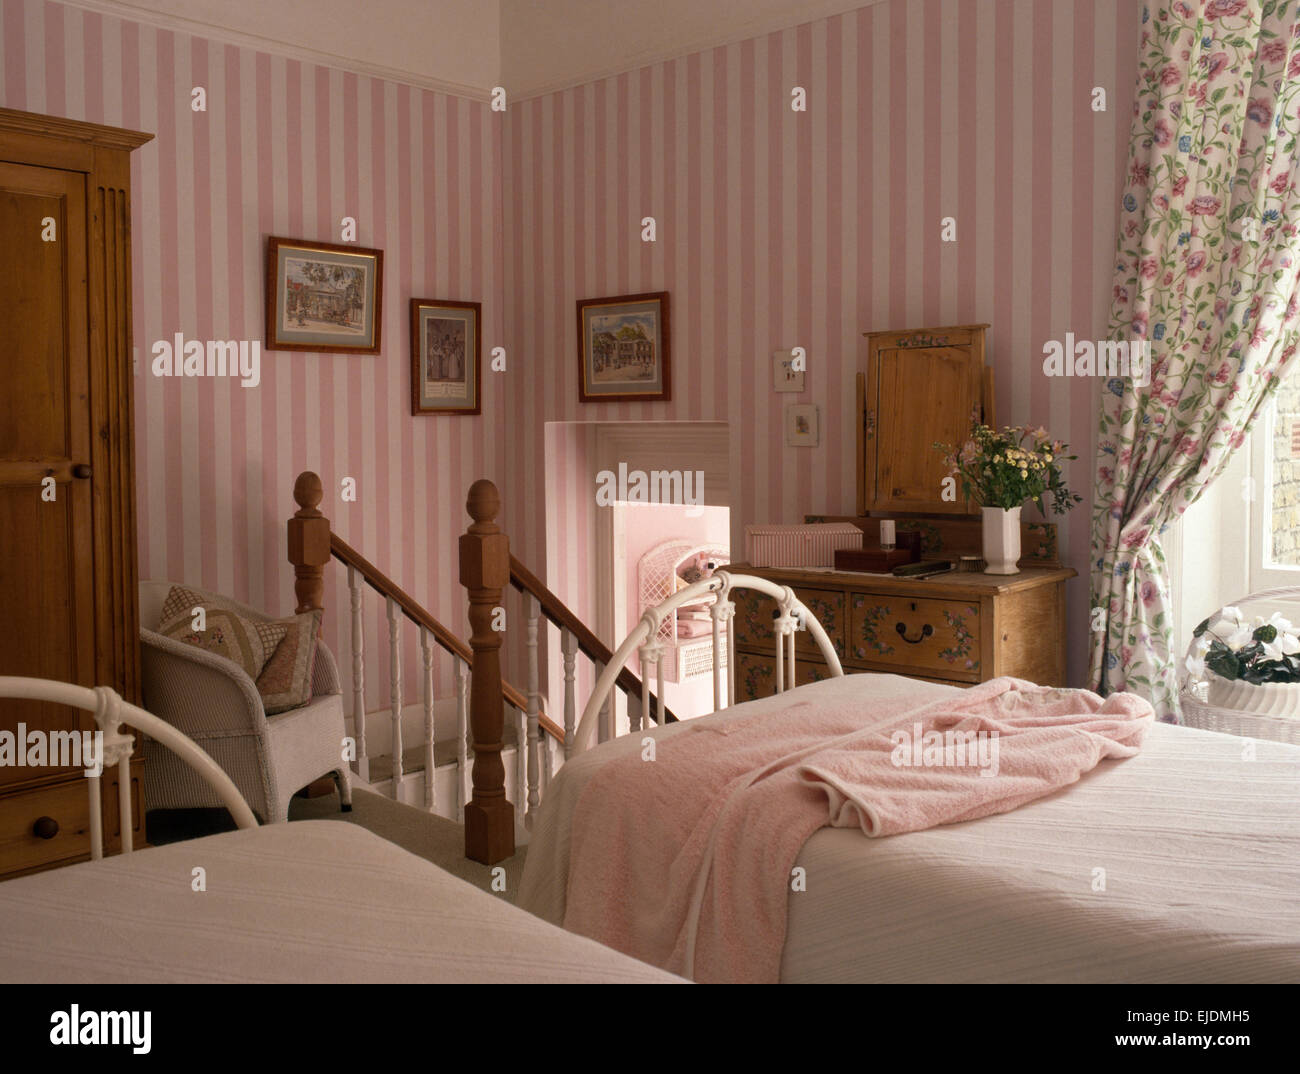 Papier peint à rayures roses en pays chambre avec deux lits en fer forgé blanc Banque D'Images